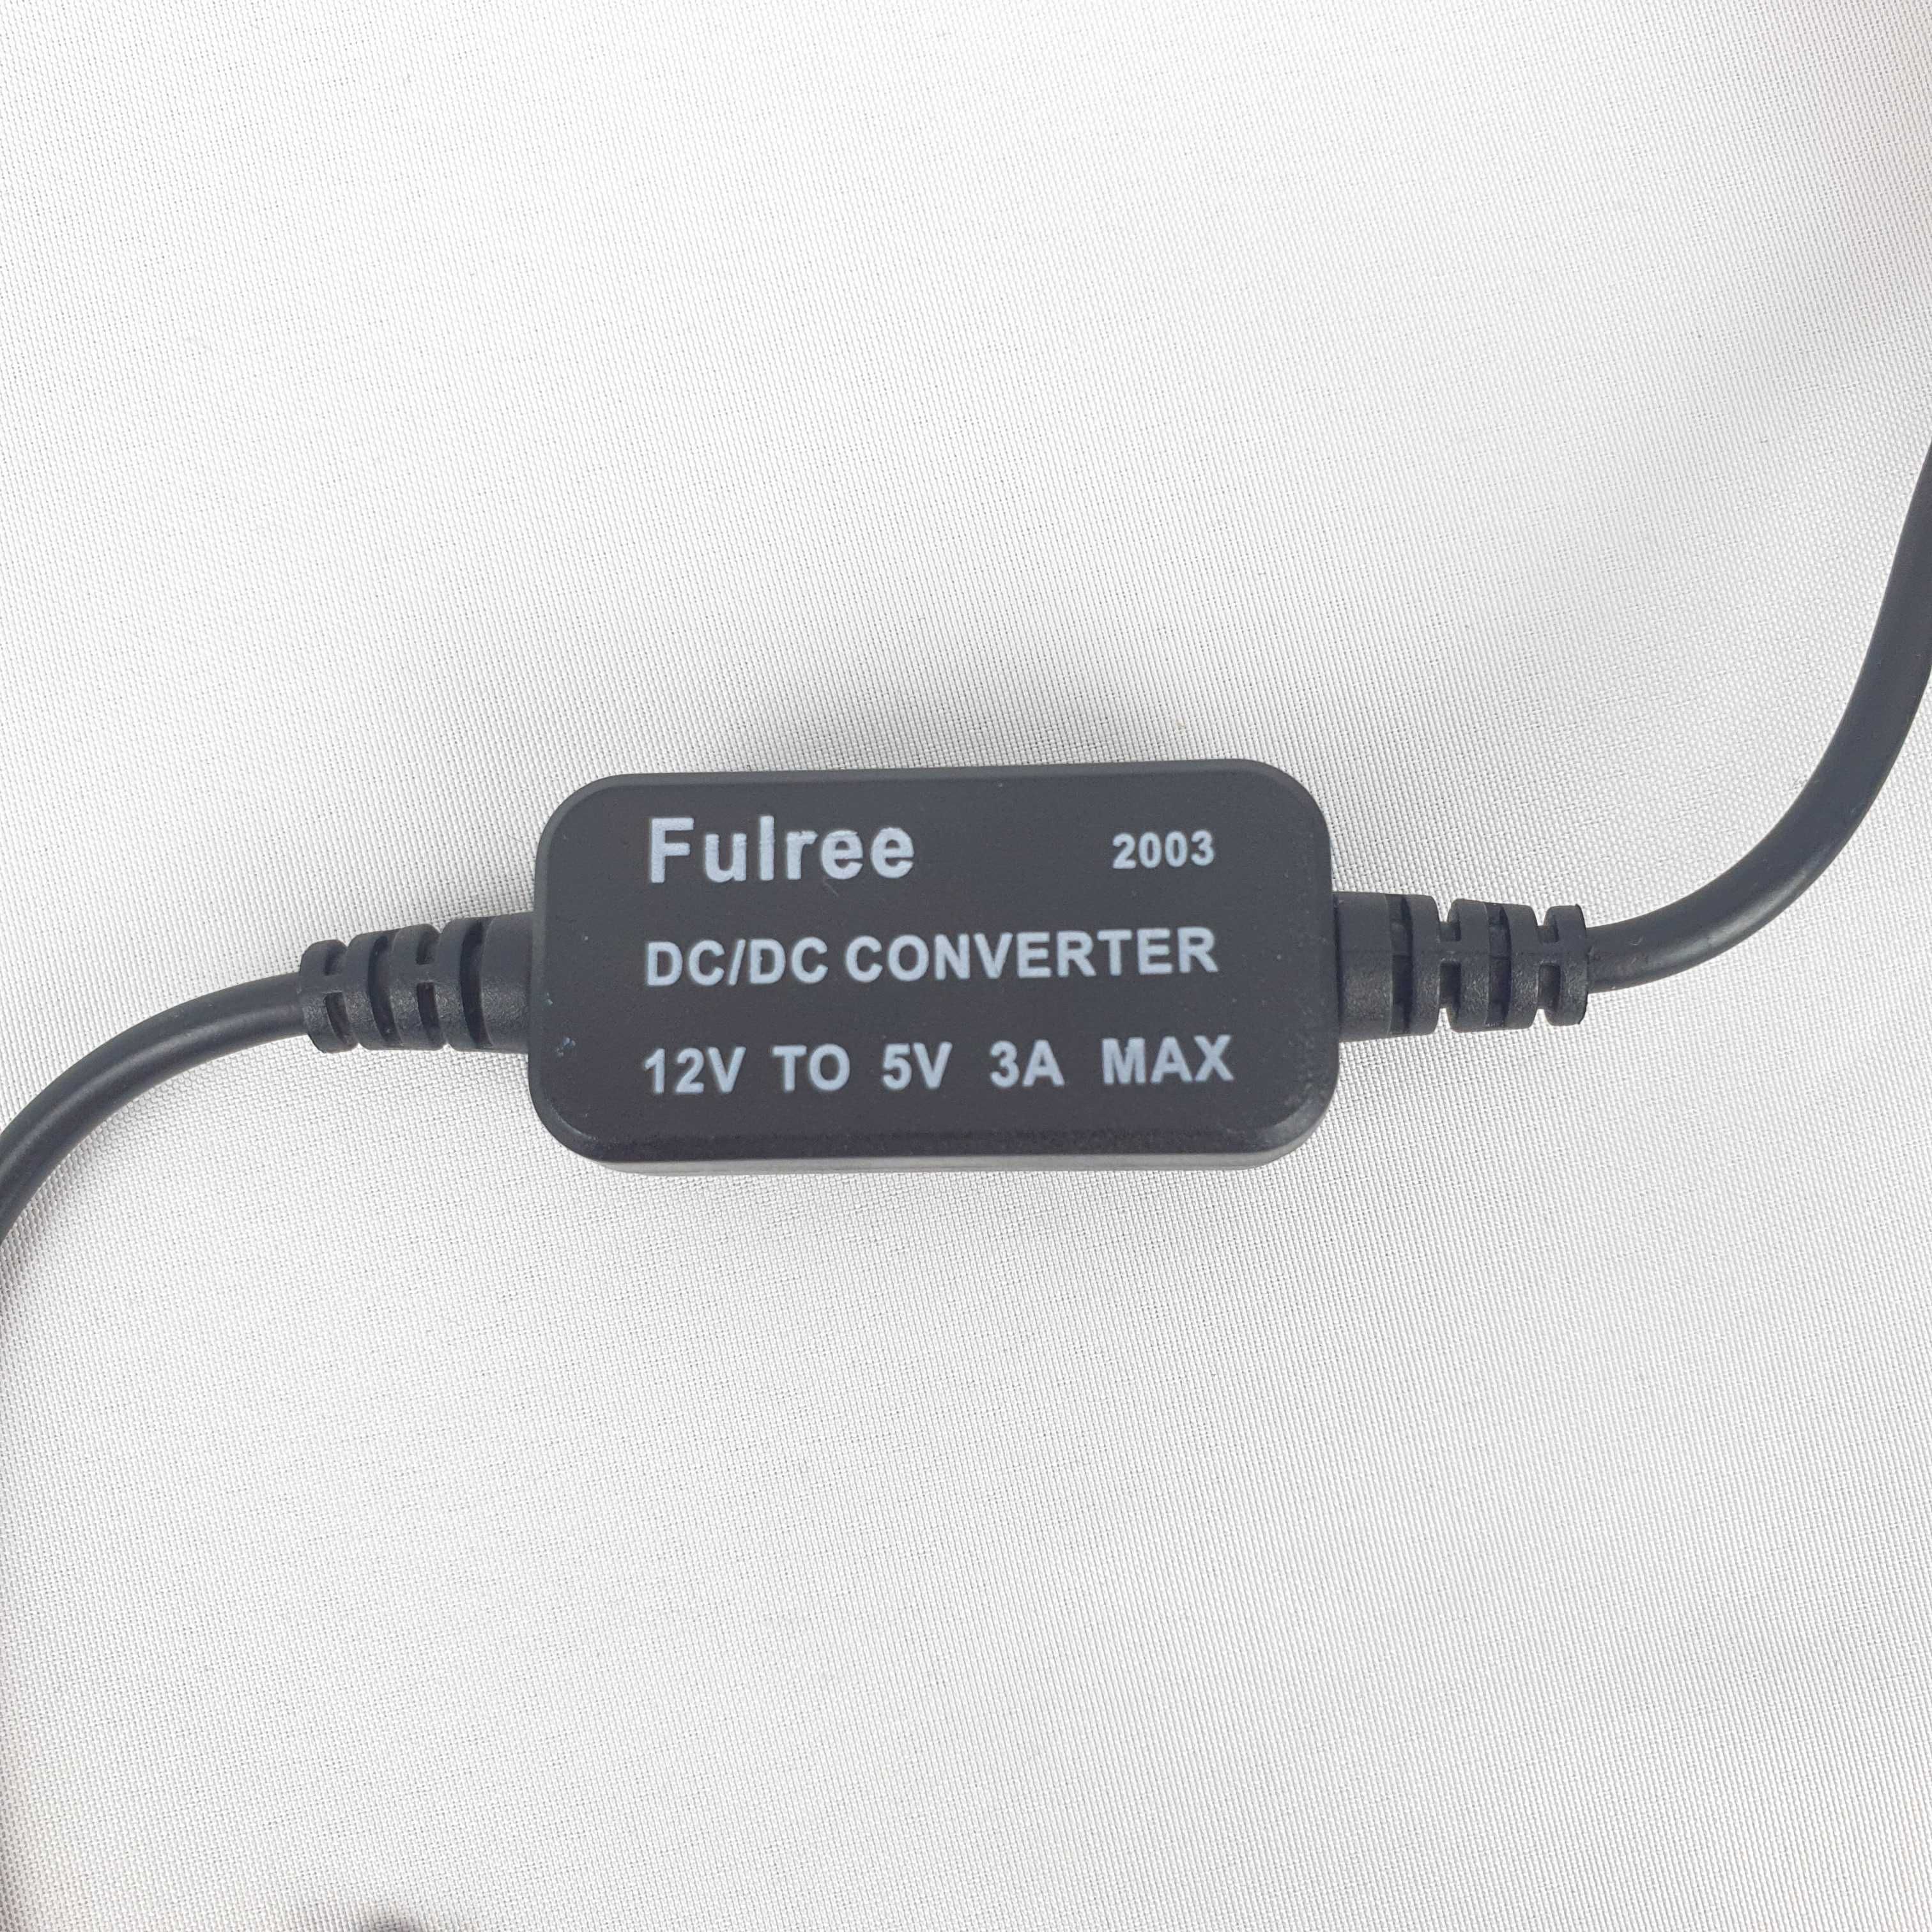 Alimentator oglinda marsarier-Alimentare Camera DVR-Auto-Micro USB-3A